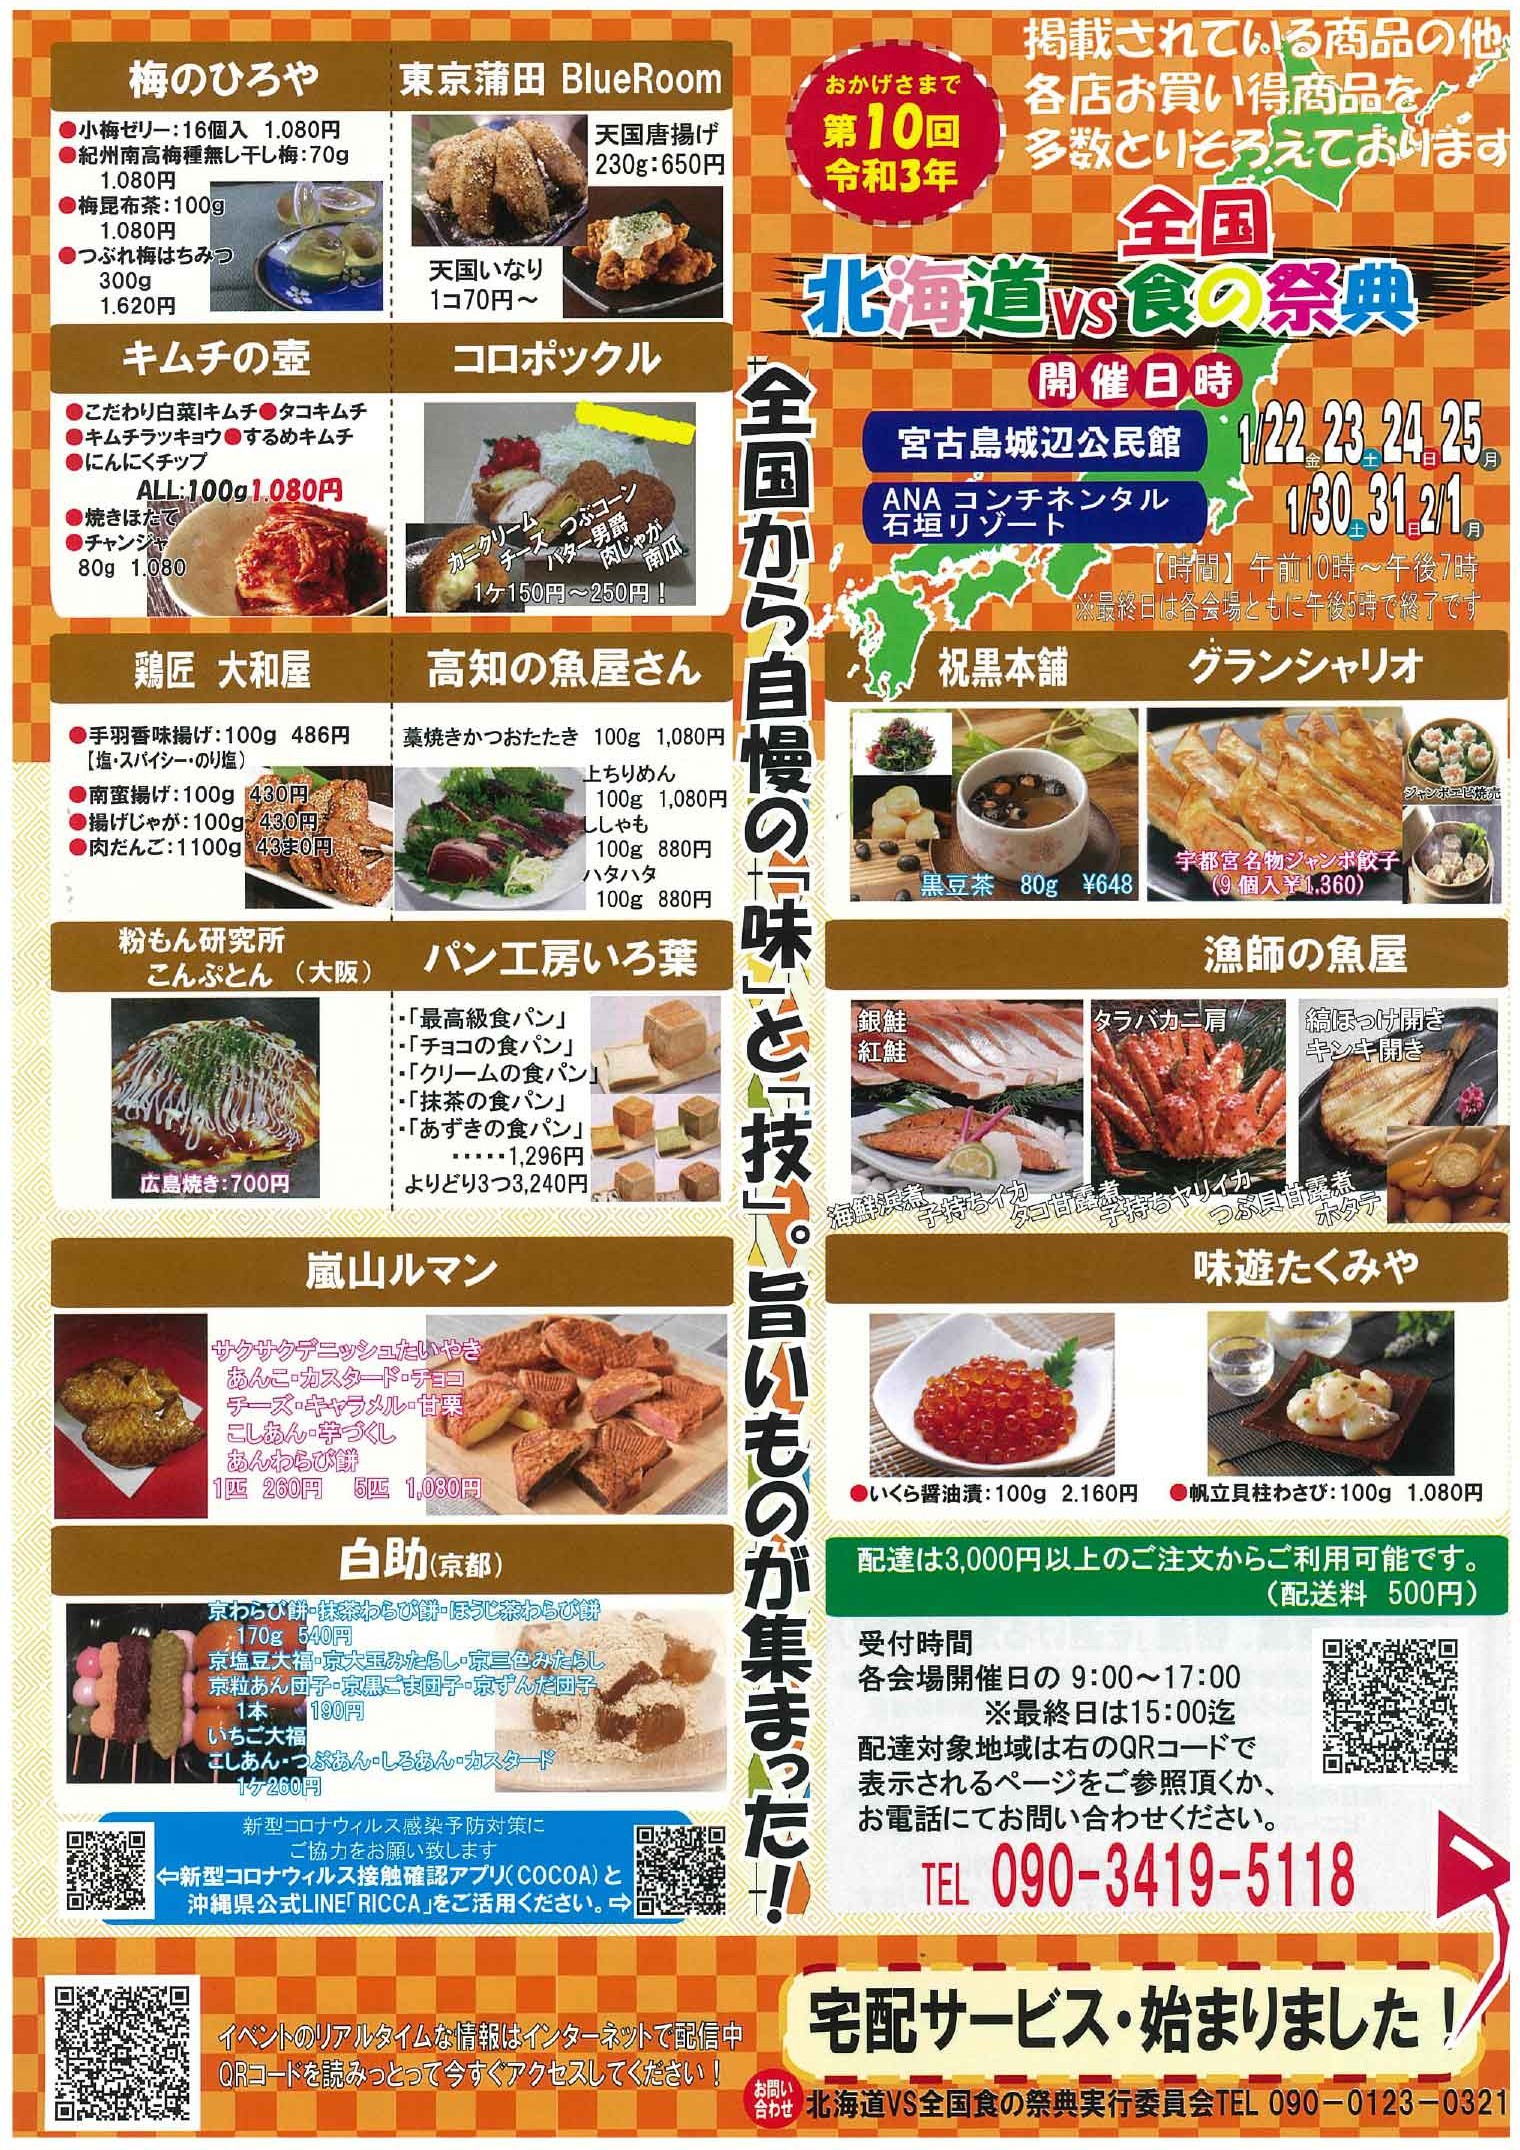 21 北海道vs全国食の祭典 Anaコンチネンタル石垣リゾート 八重山スケジュール やいまタイム